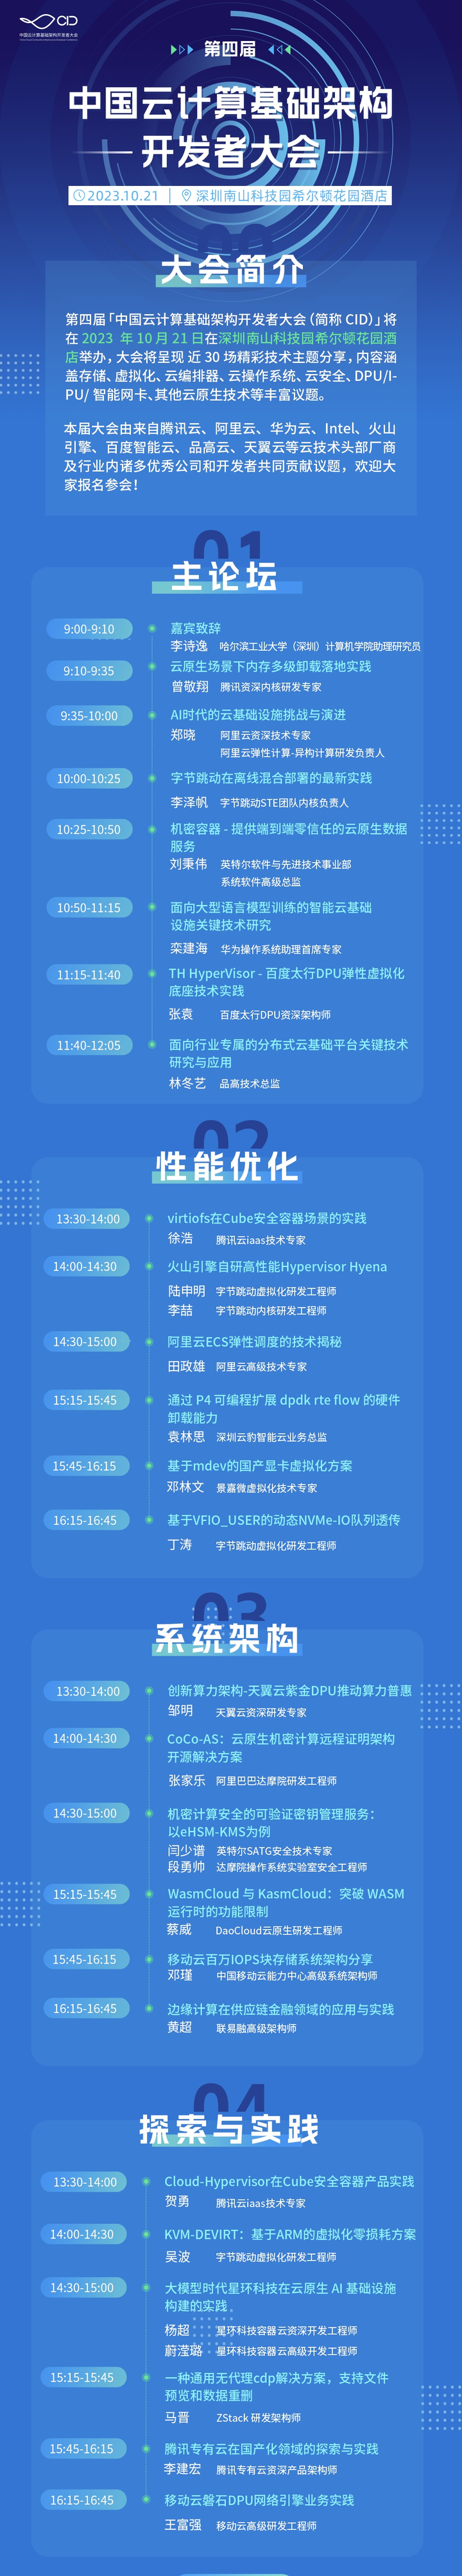 报名倒计时 | 超硬核！第四届中国云计算基础架构开发者大会邀你参会-鸿蒙开发者社区